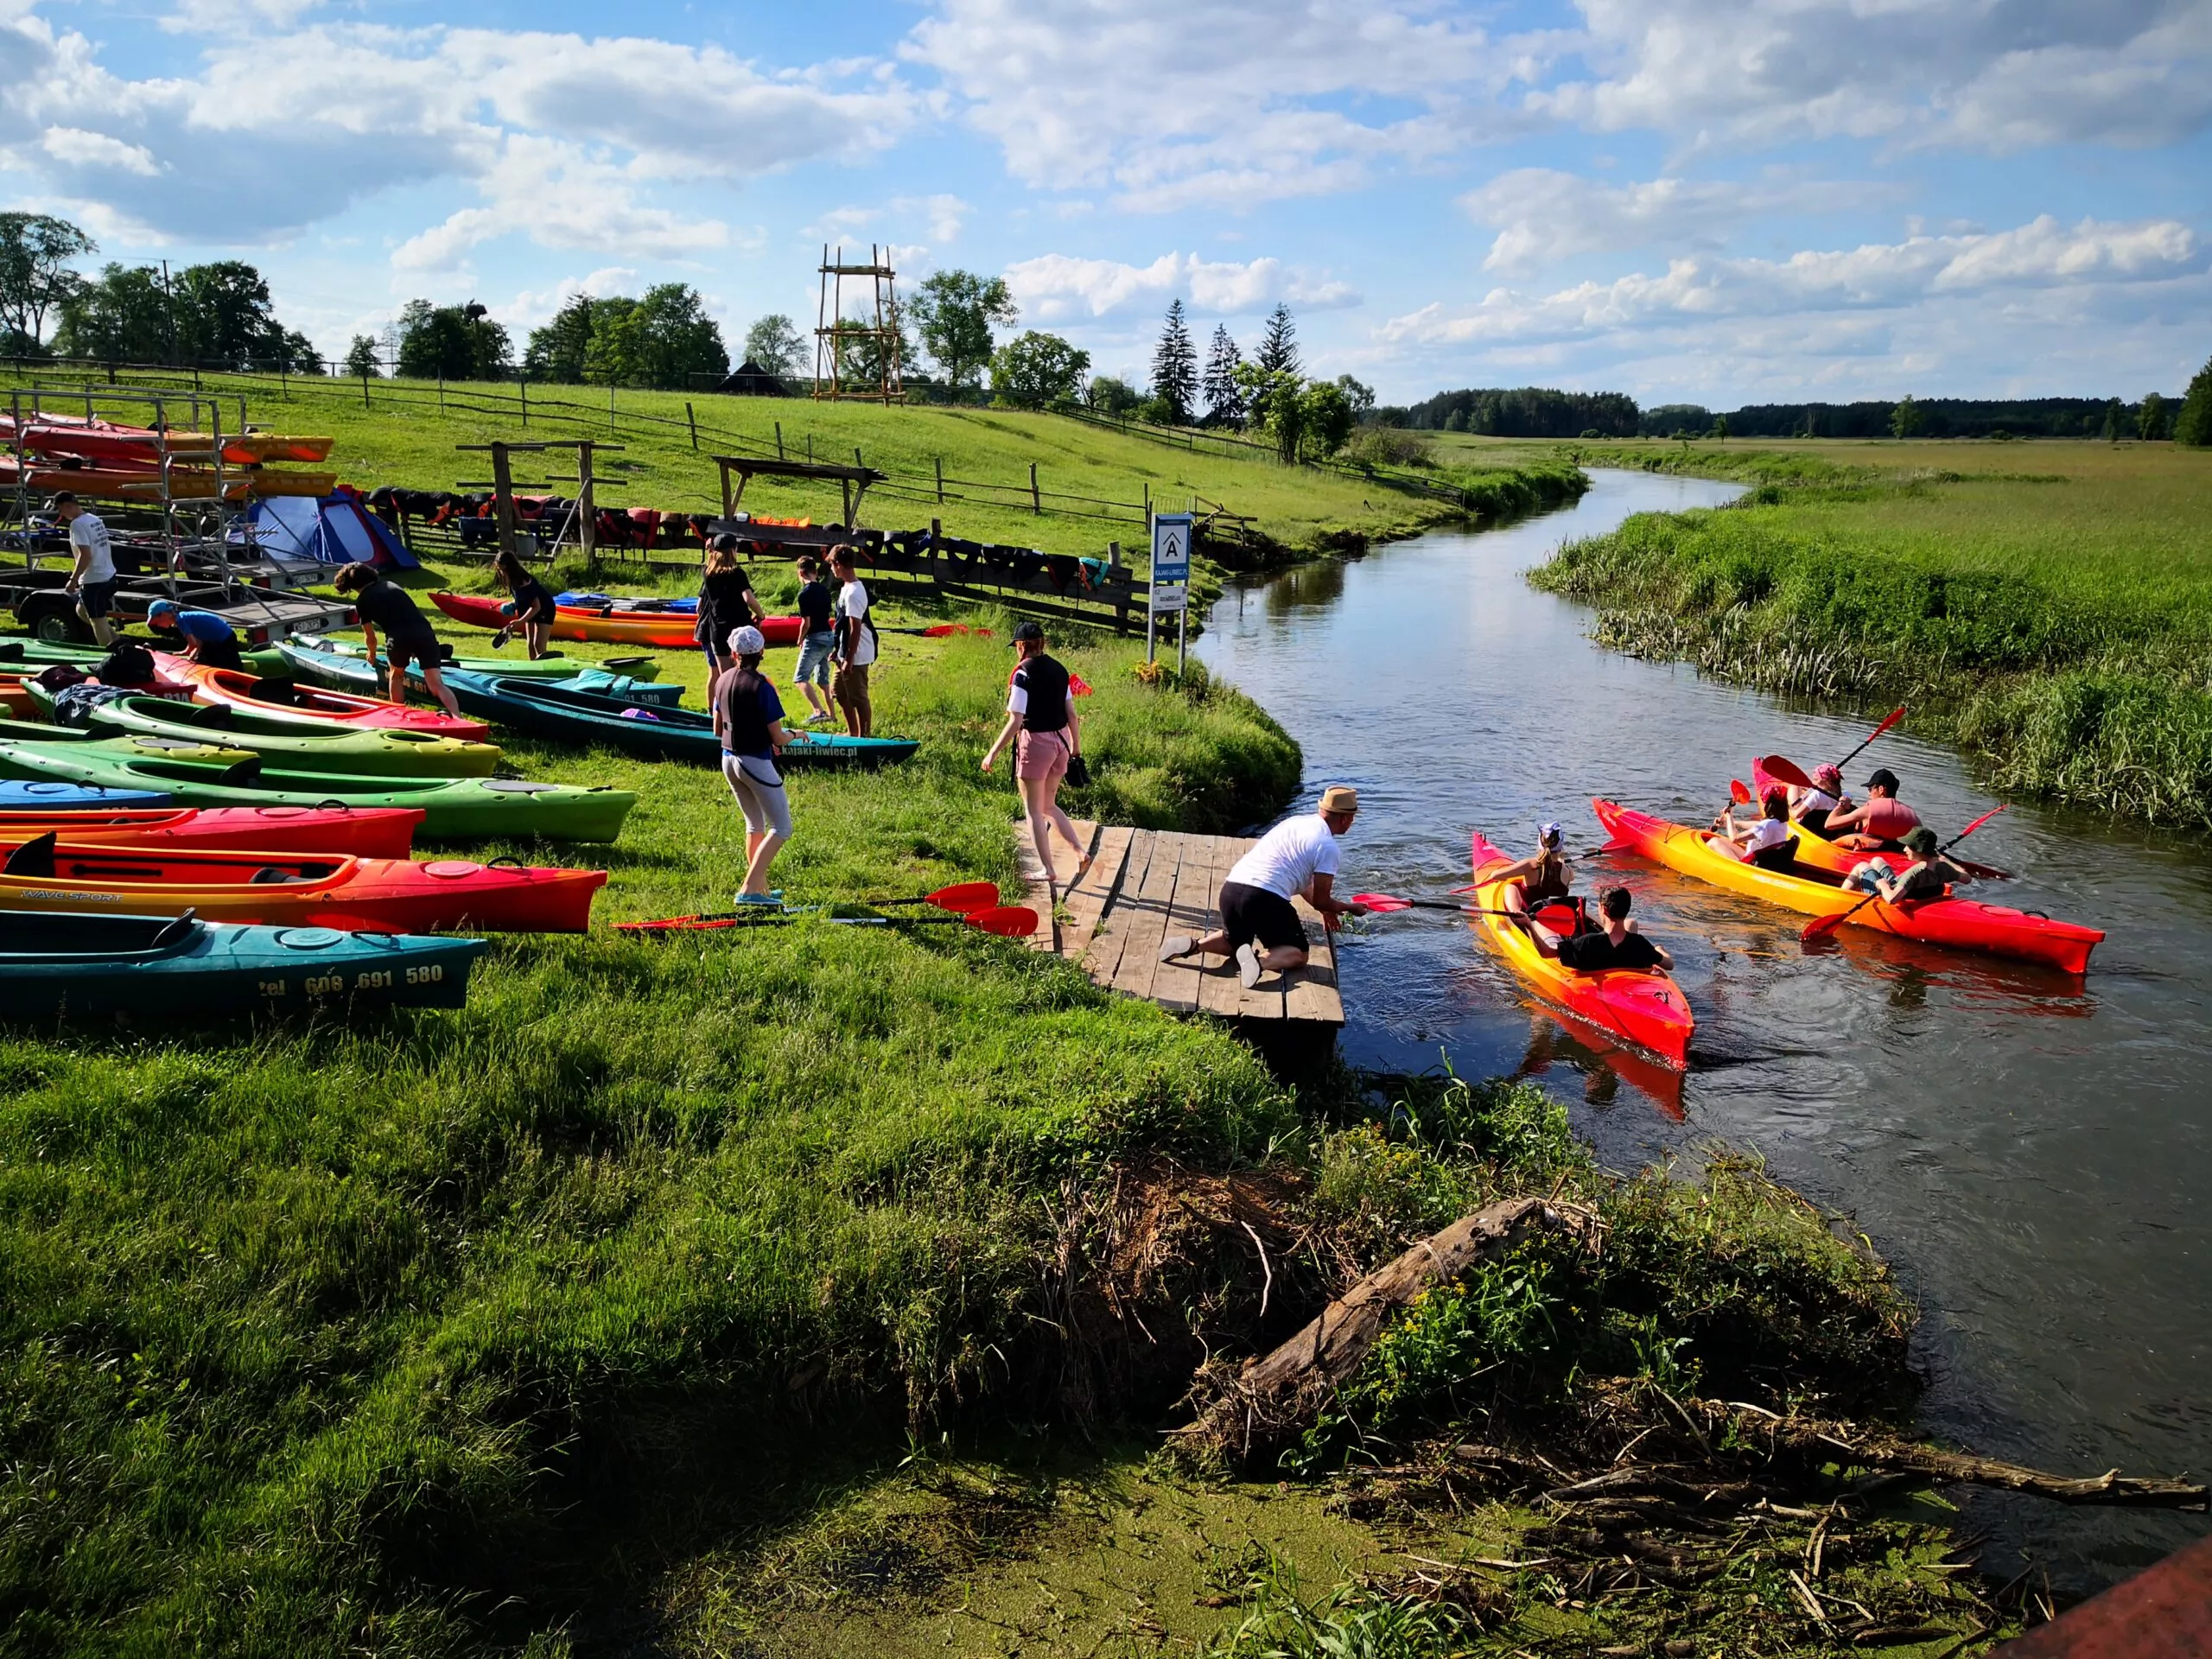 Kajaki Liwiec in Poland, Europe | Kayaking & Canoeing - Rated 4.4